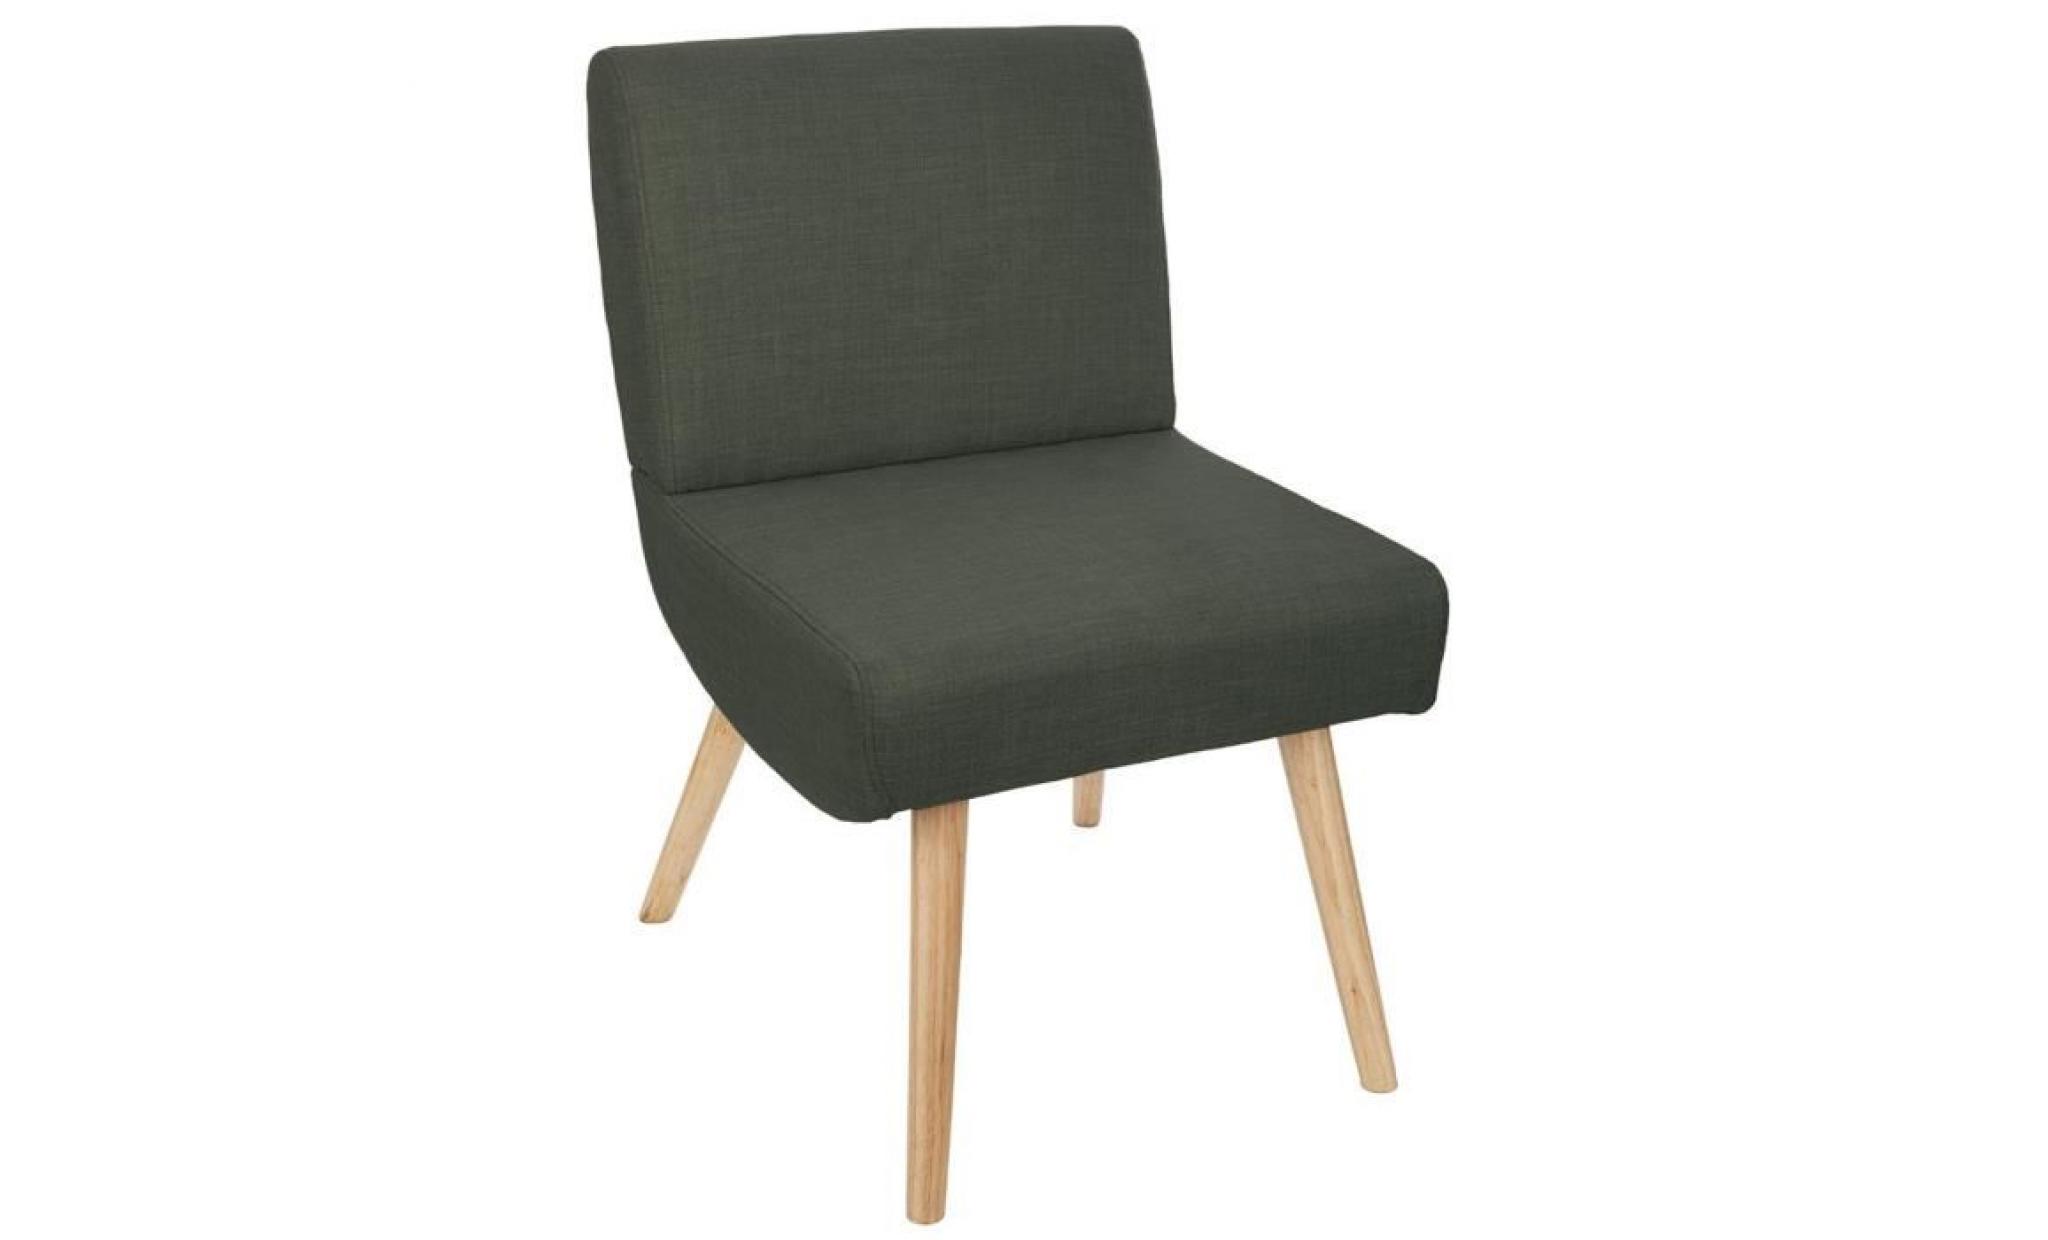 fauteuil en hévéa et polyester coloris gris foncé   dim : l.59 x l.49 x h.76 cm